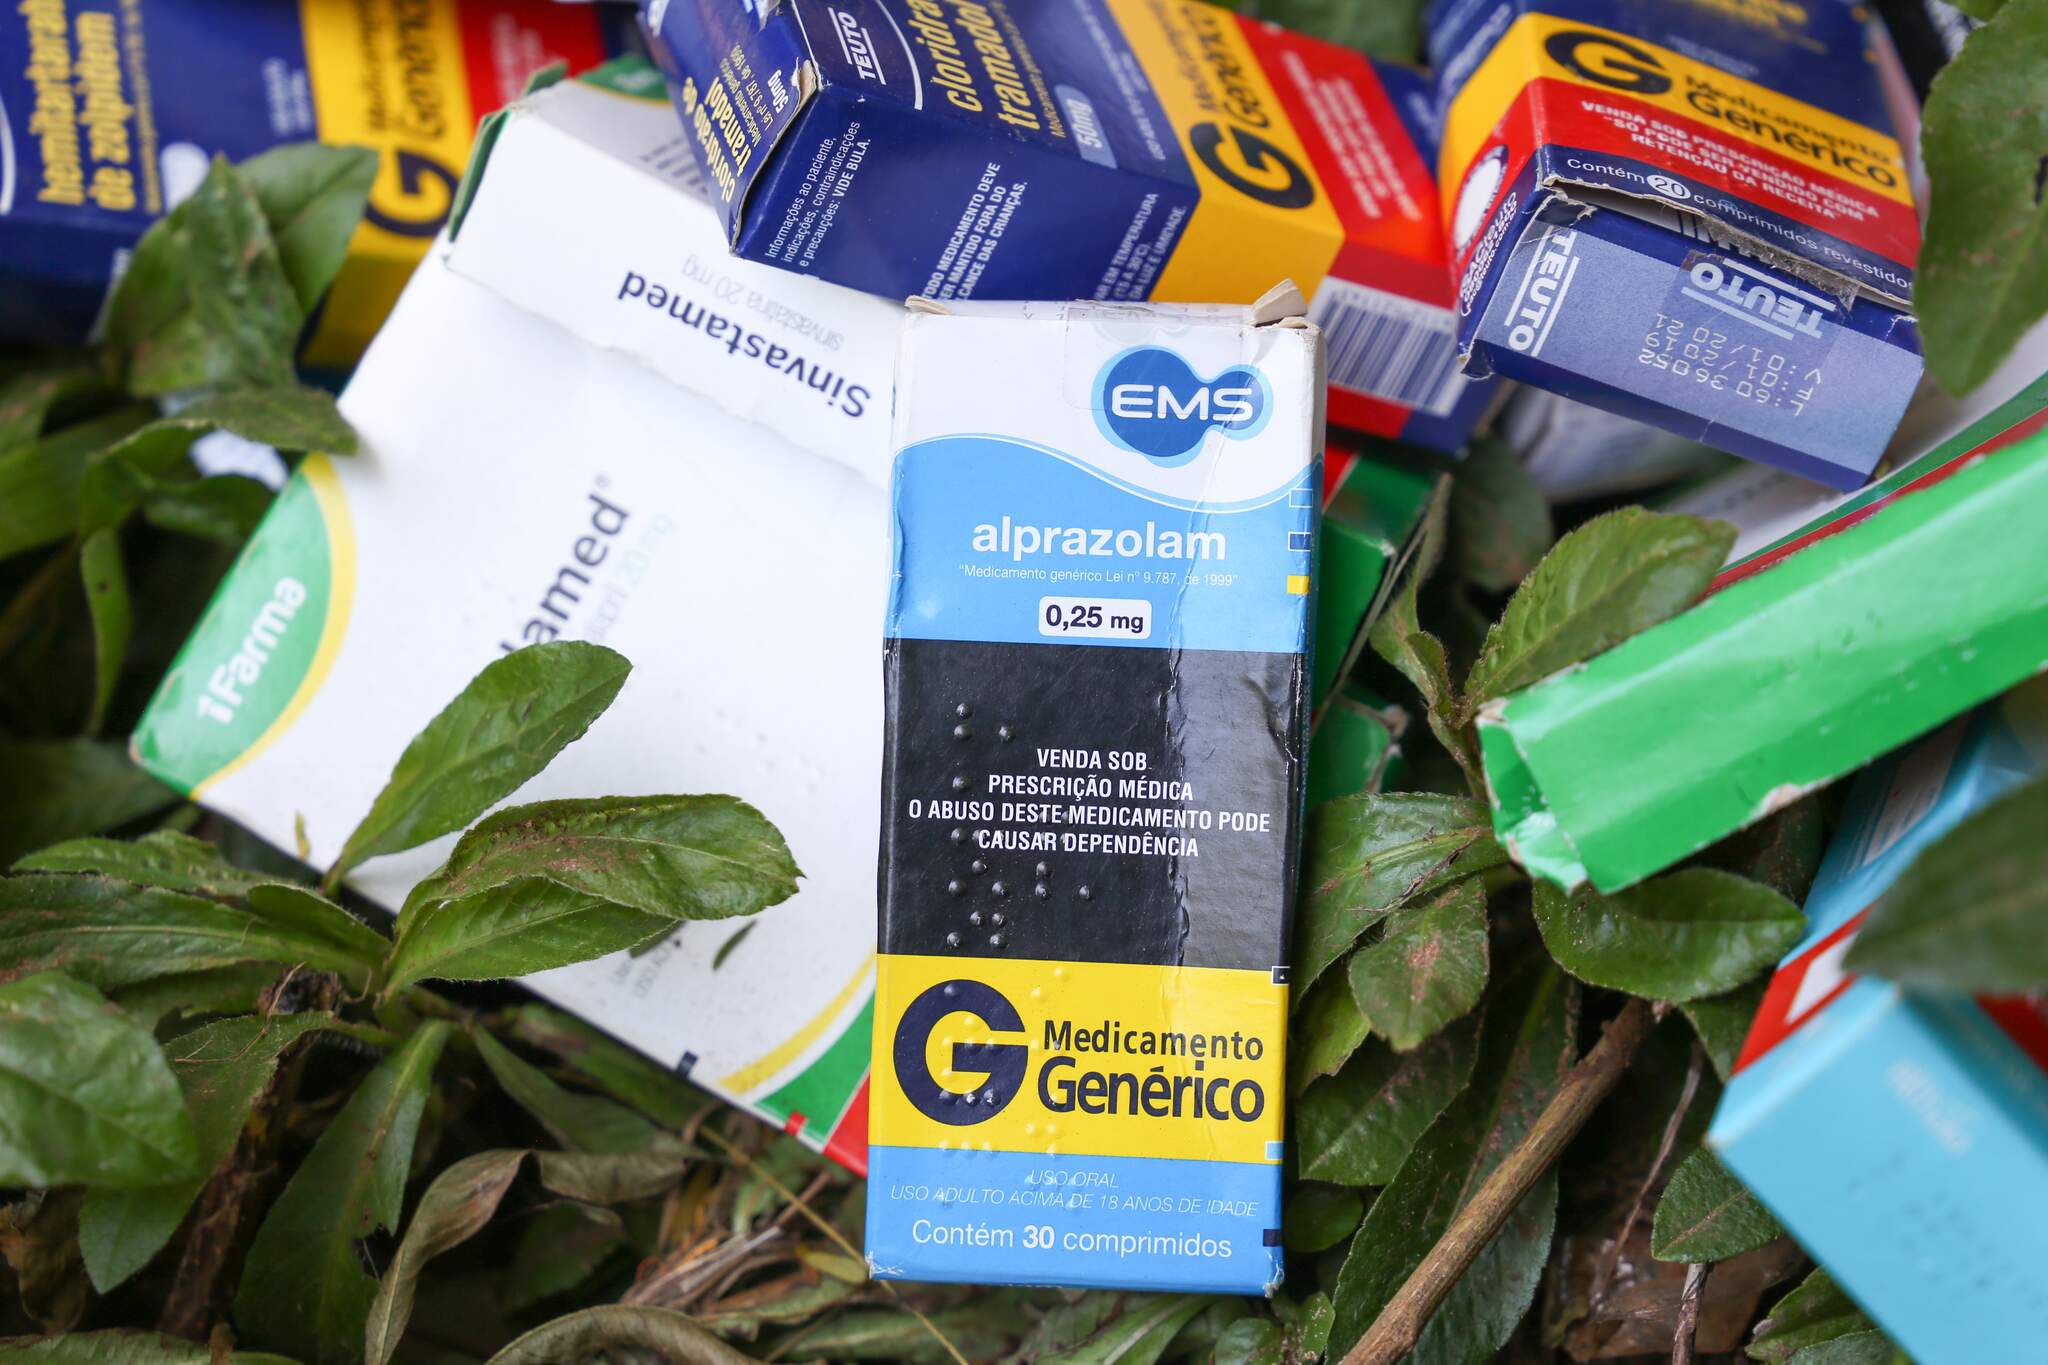 Remédios tarja preta entre as caixas. (Foto: Paulo Francis / Arquivo)